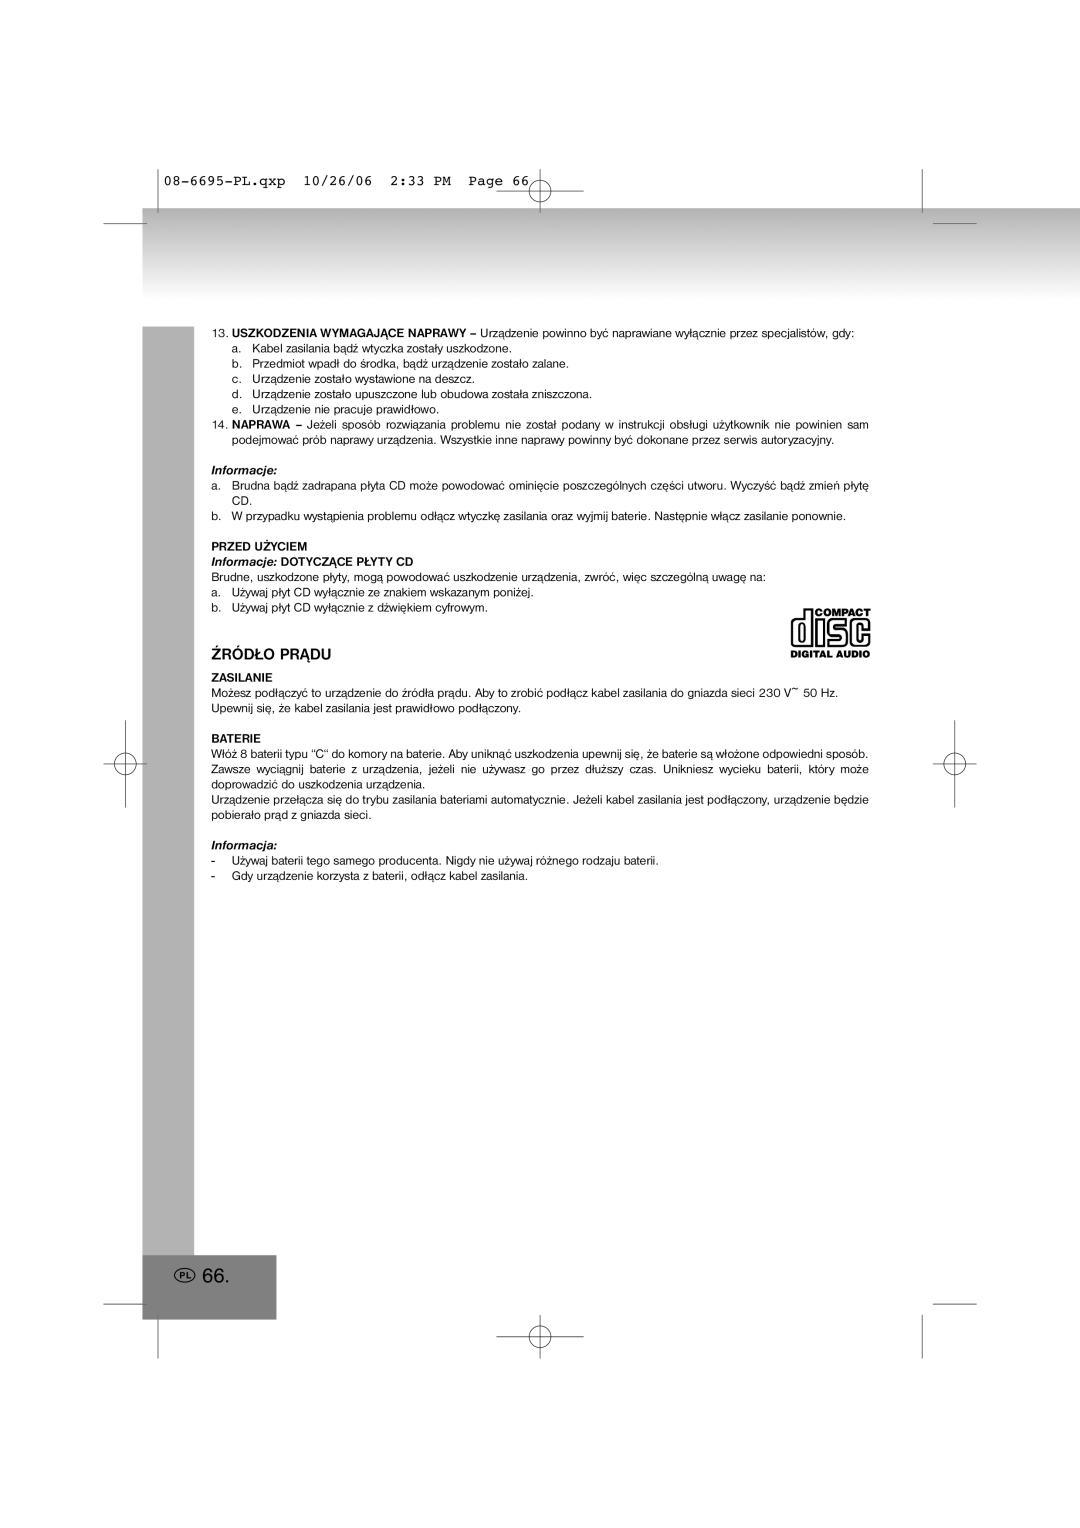 Elta manual Źródło Prądu, 08-6695-PL.qxp10/26/06 2 33 PM Page, Informacje, Informacja 